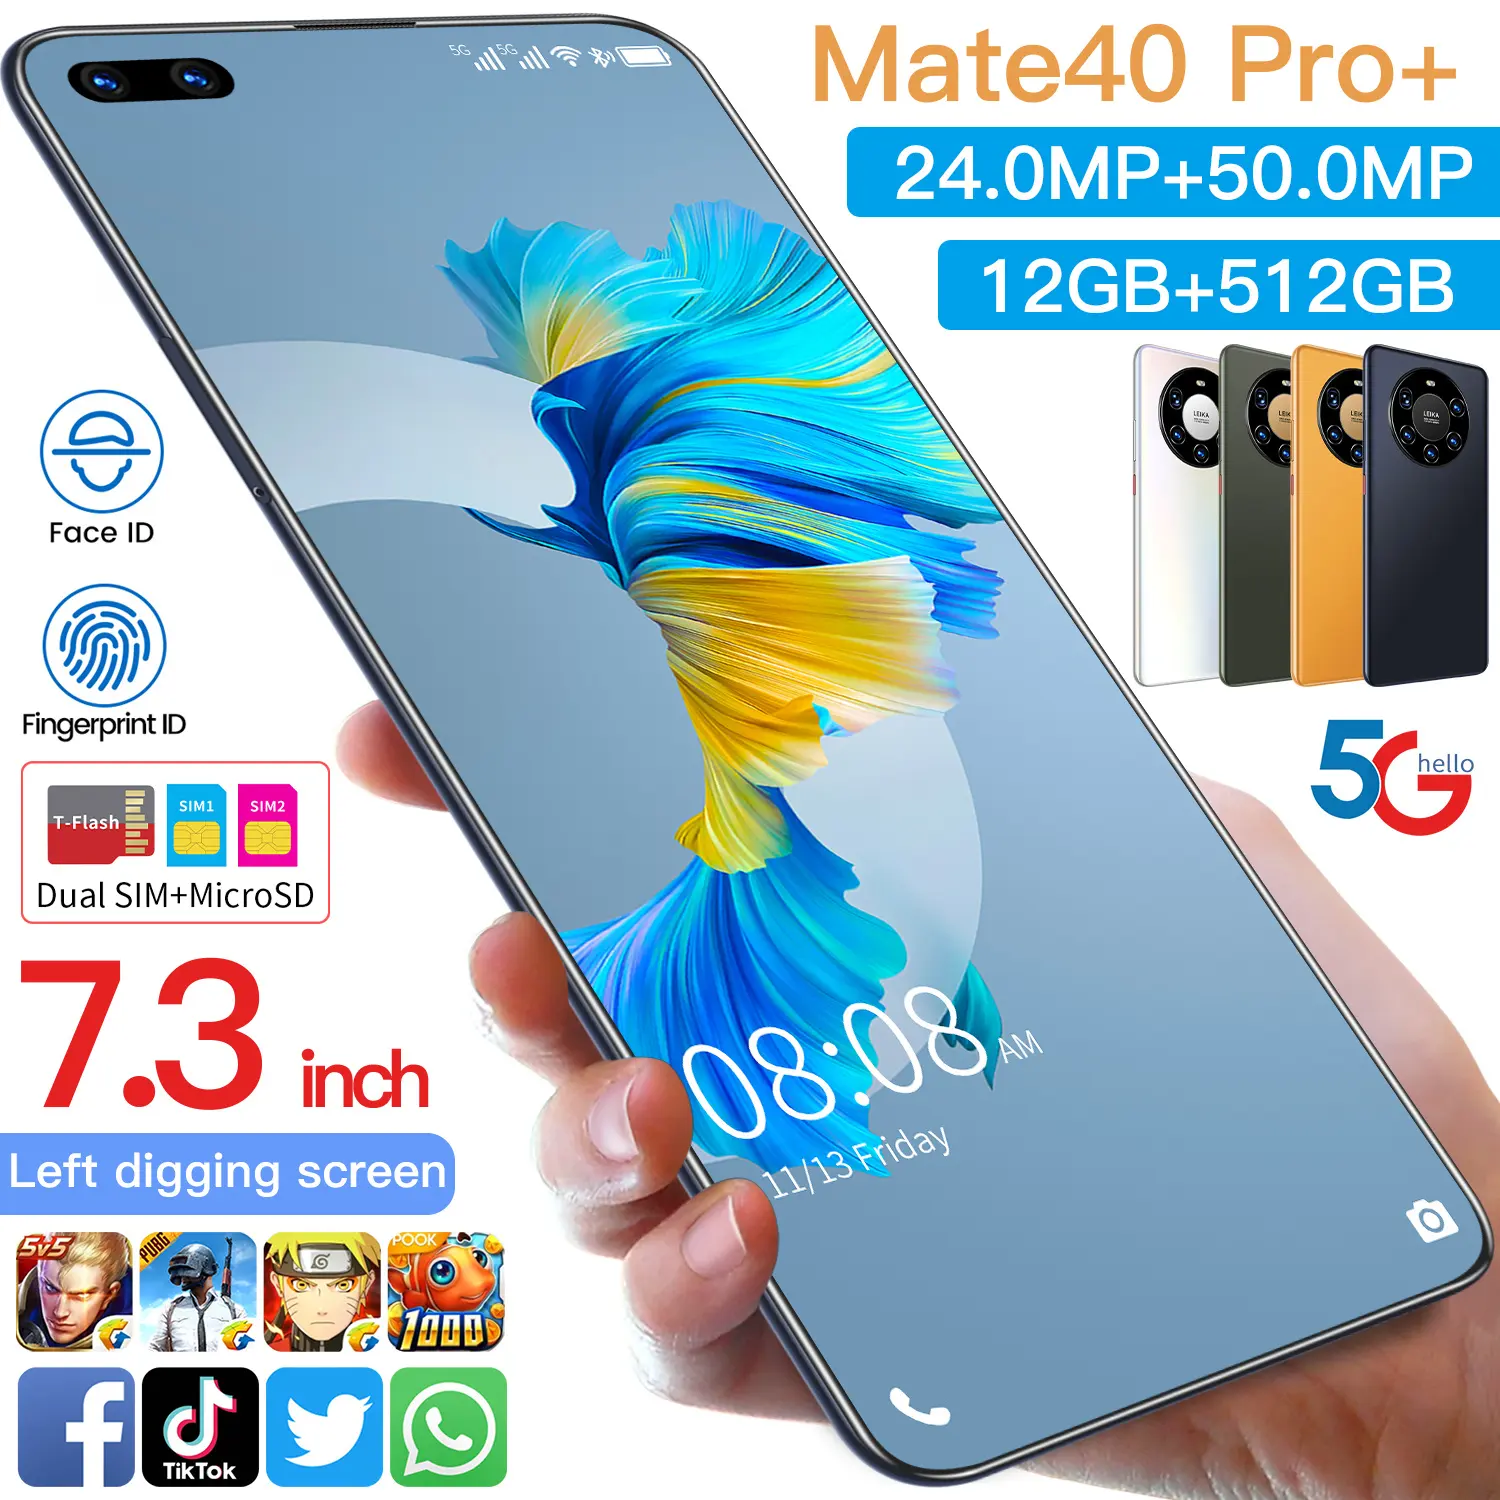 Venta caliente Mate 40 Pro + Original 12GB + 512GB 24mp + 50mp Desbloqueo facial Pantalla completa Android 10,0 Teléfono celular Teléfono móvil inteligente